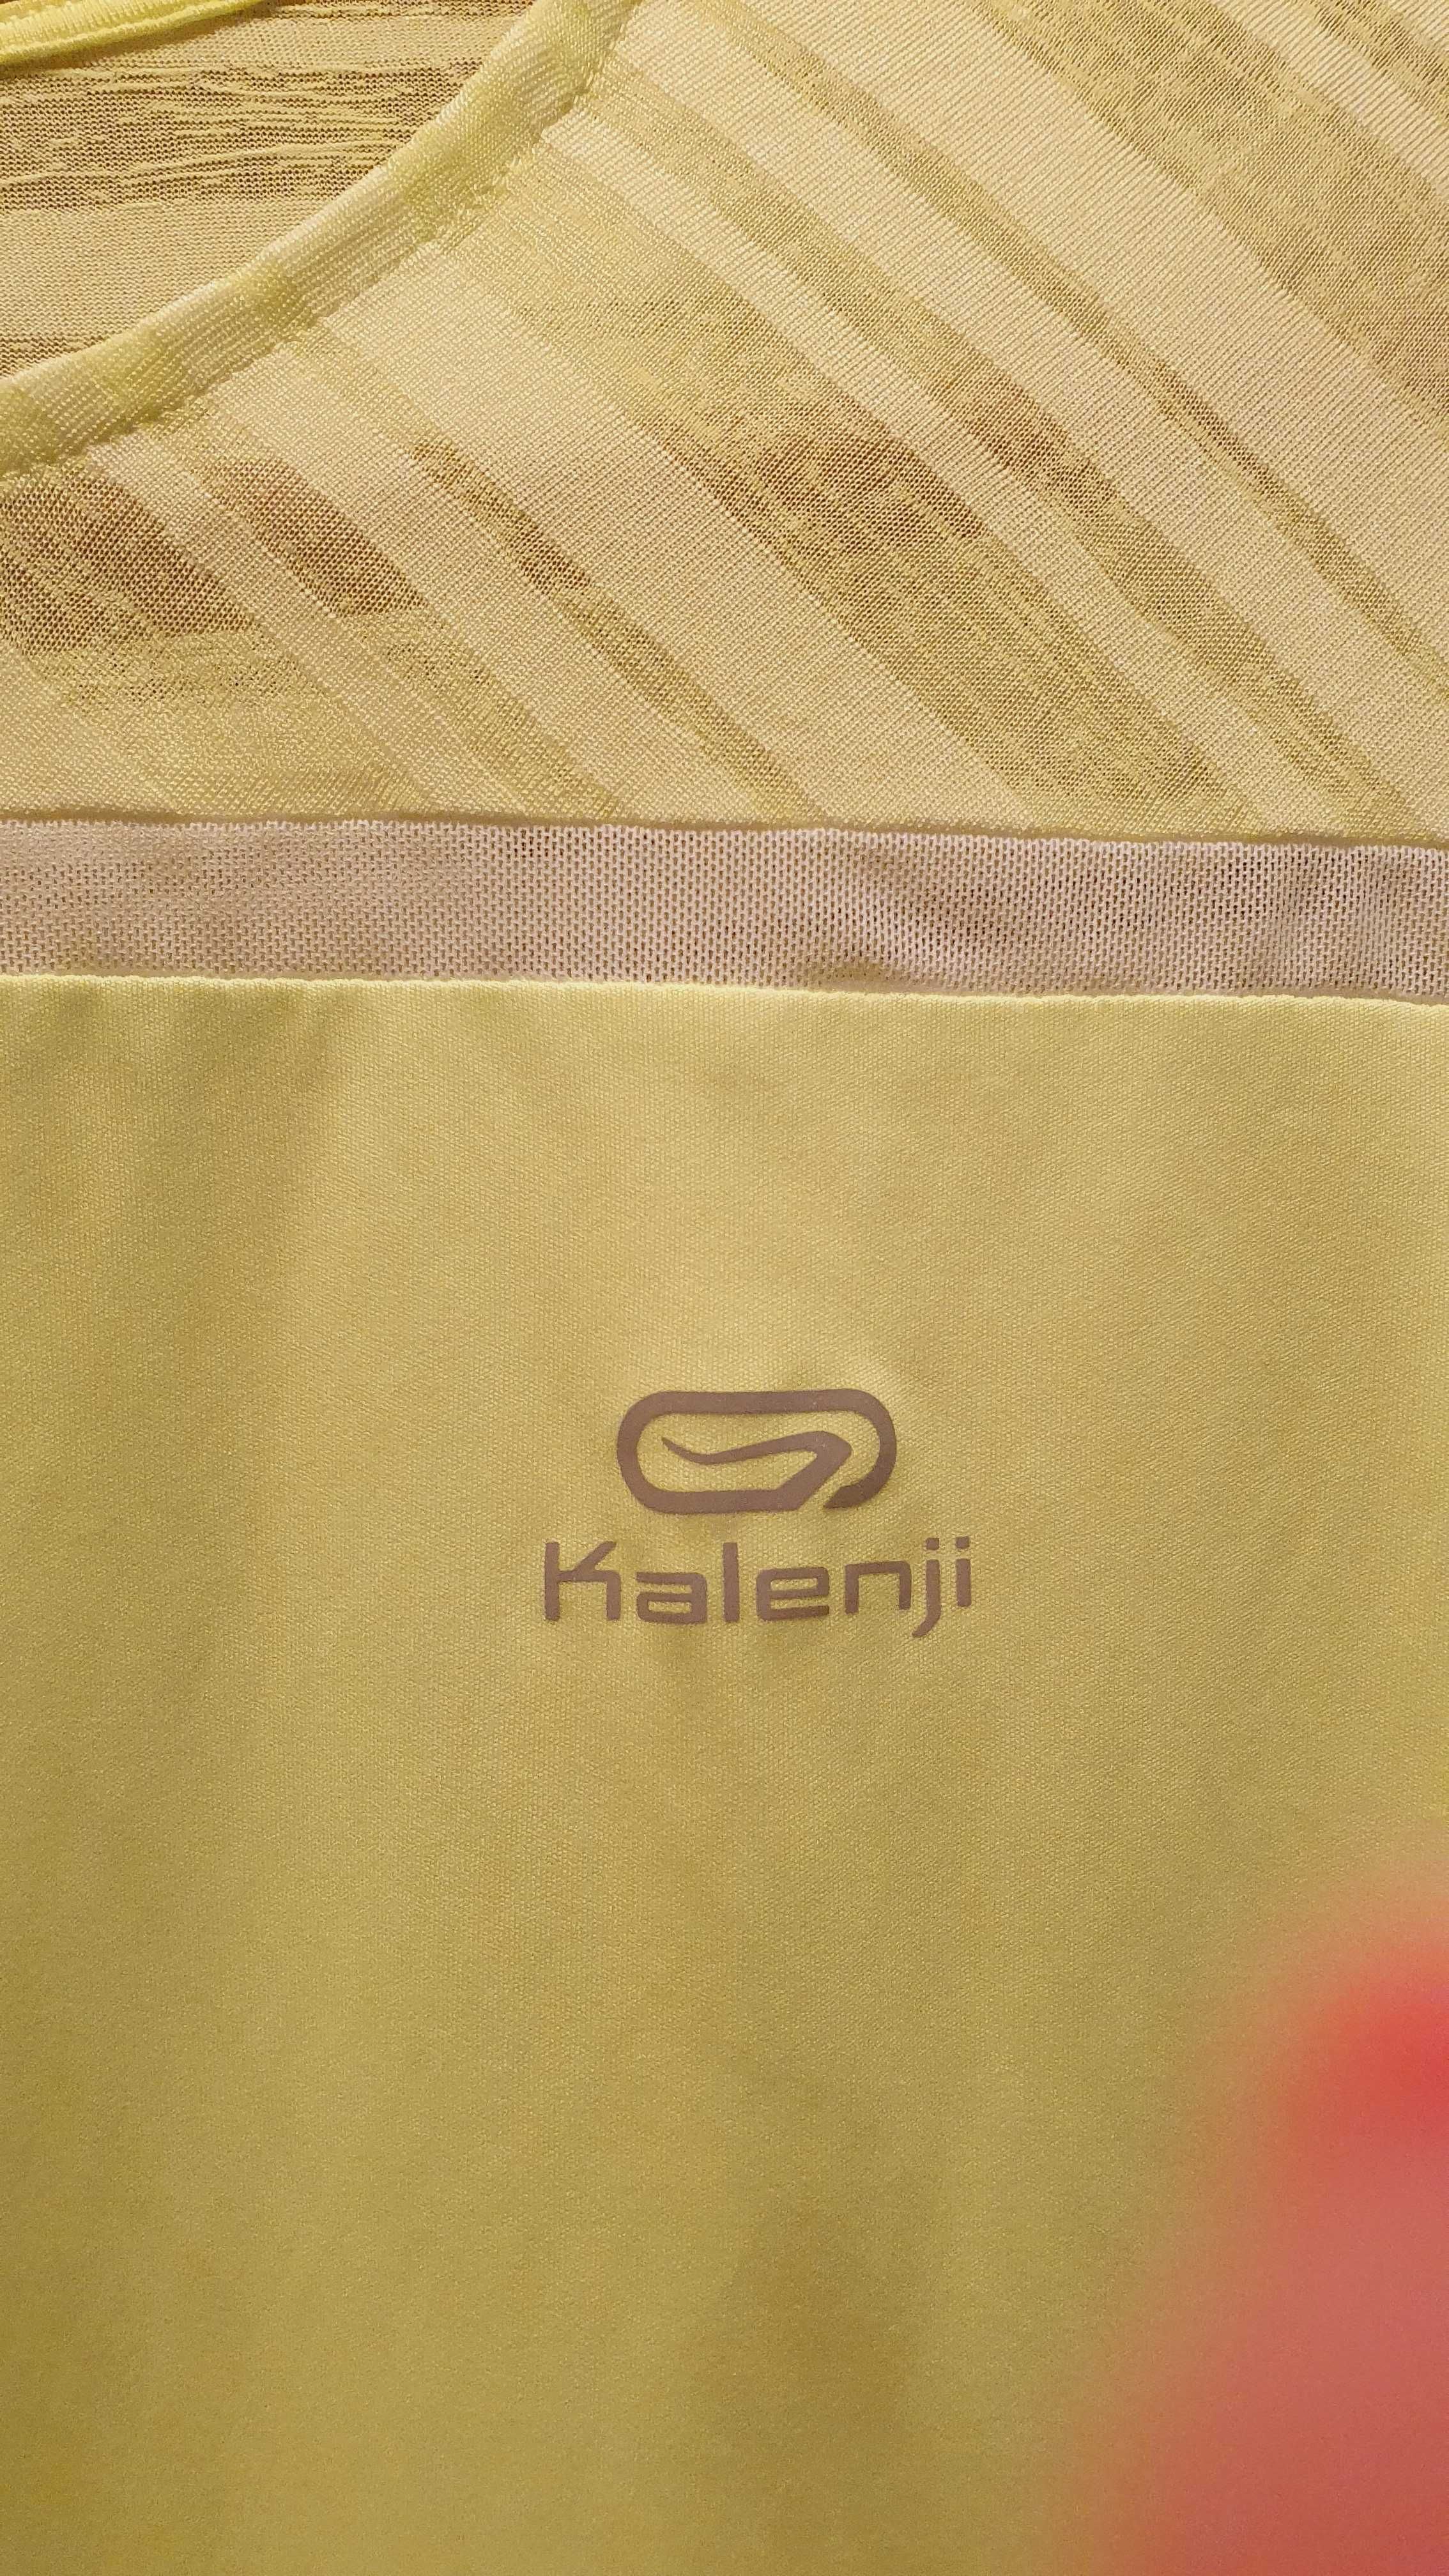 Дамска спортна блуза Kalenji, размер М - отлично състояние!